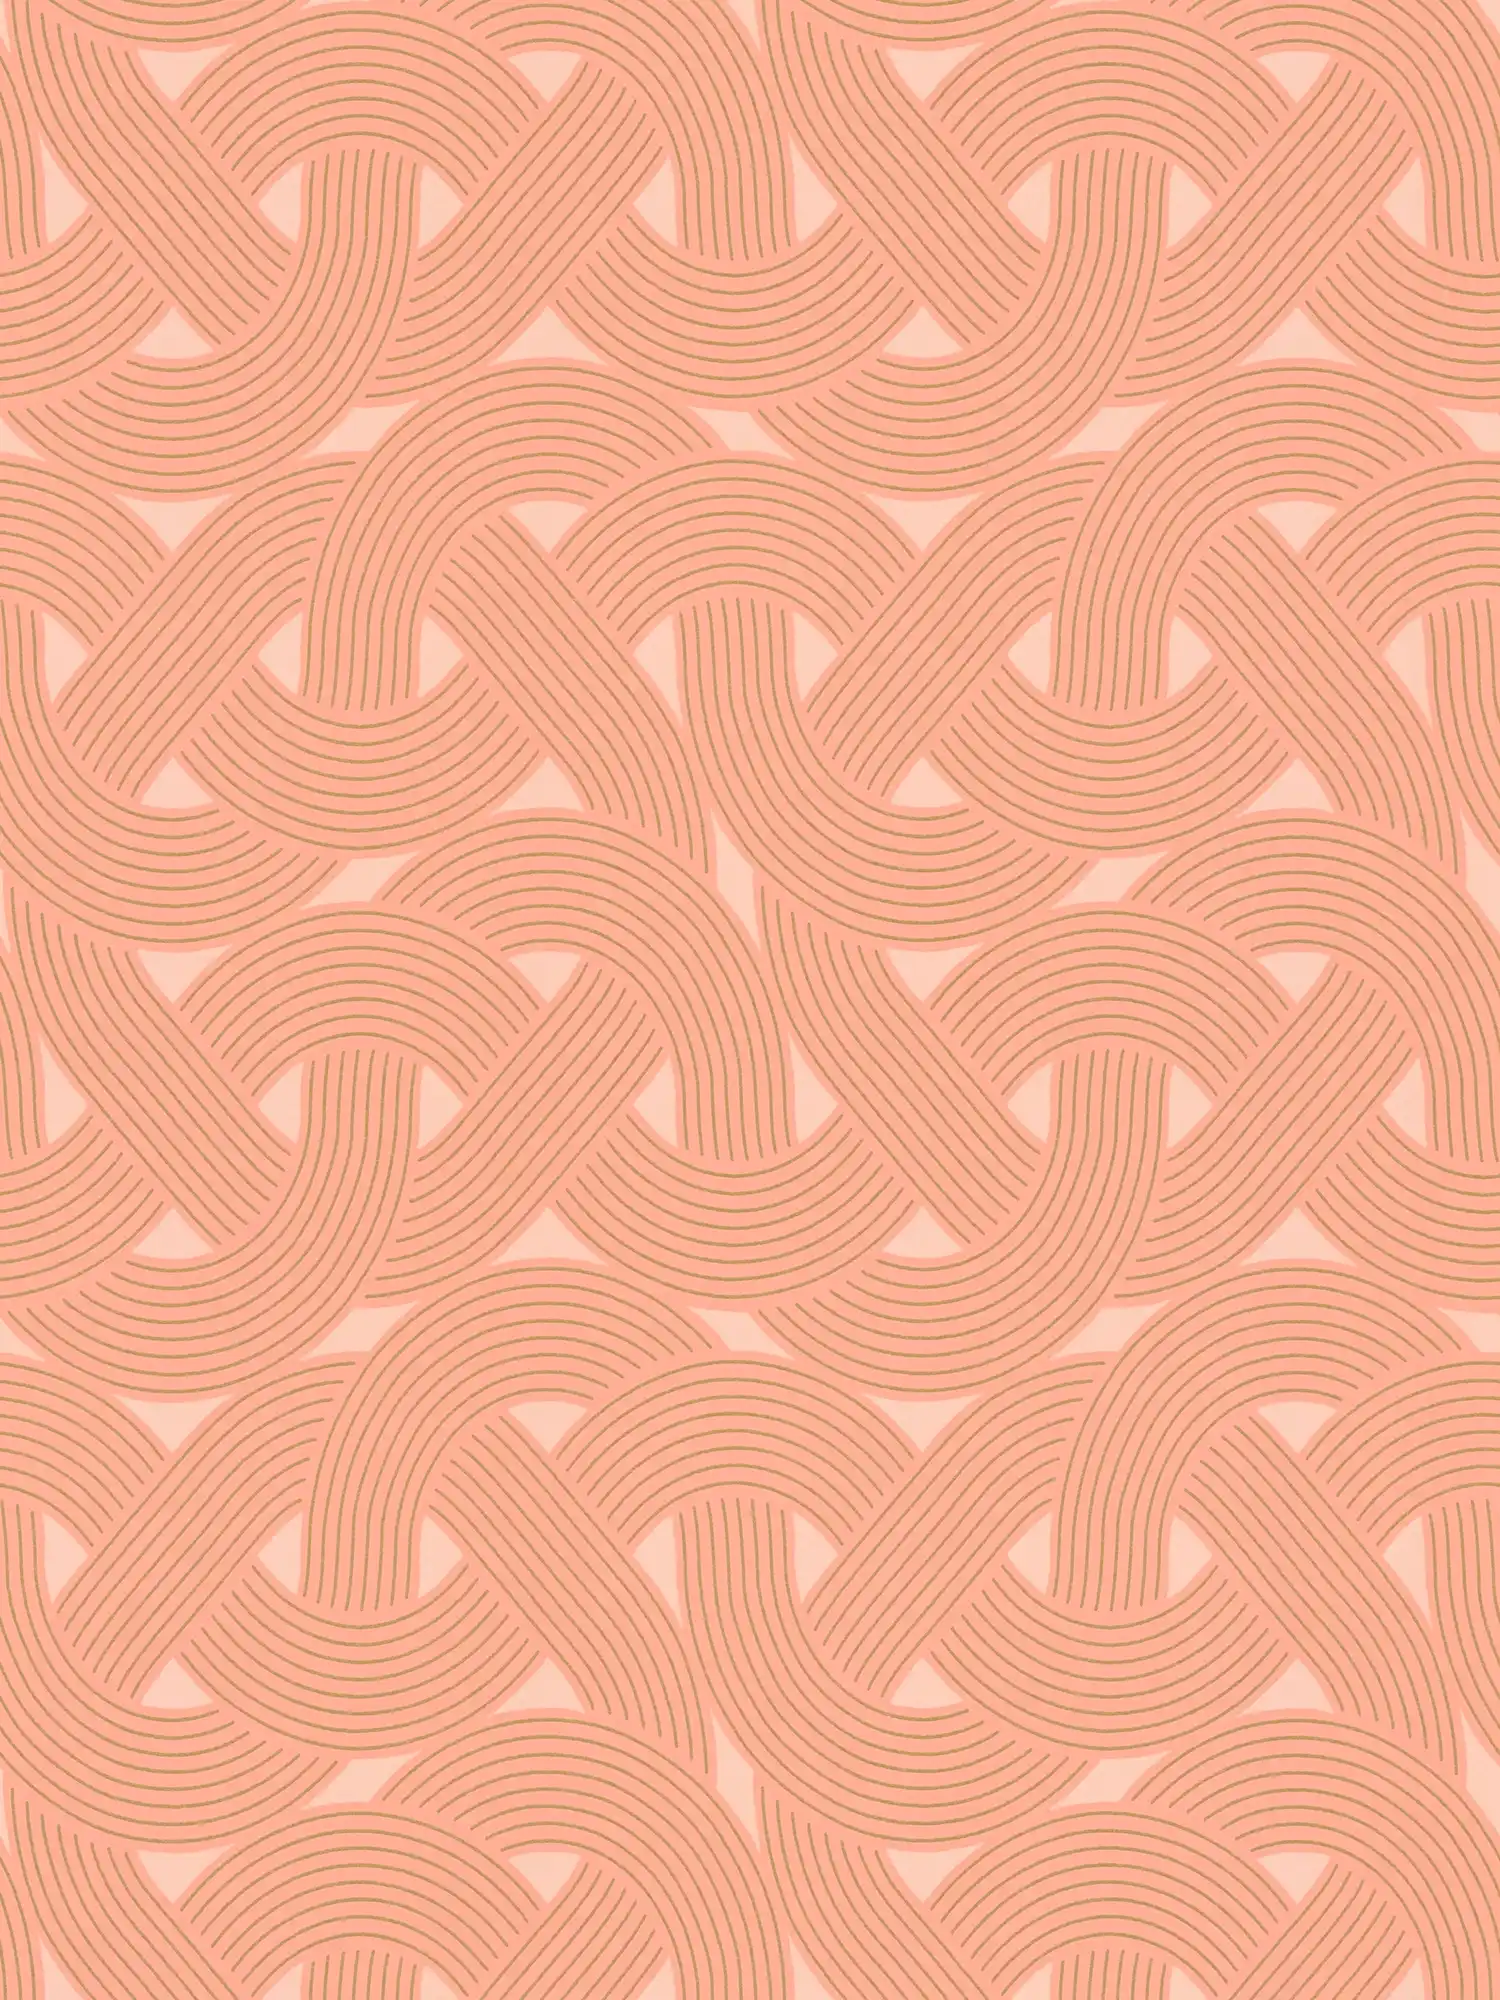 Motif de lignes graphiques de style Art déco - Orange, cuivre
